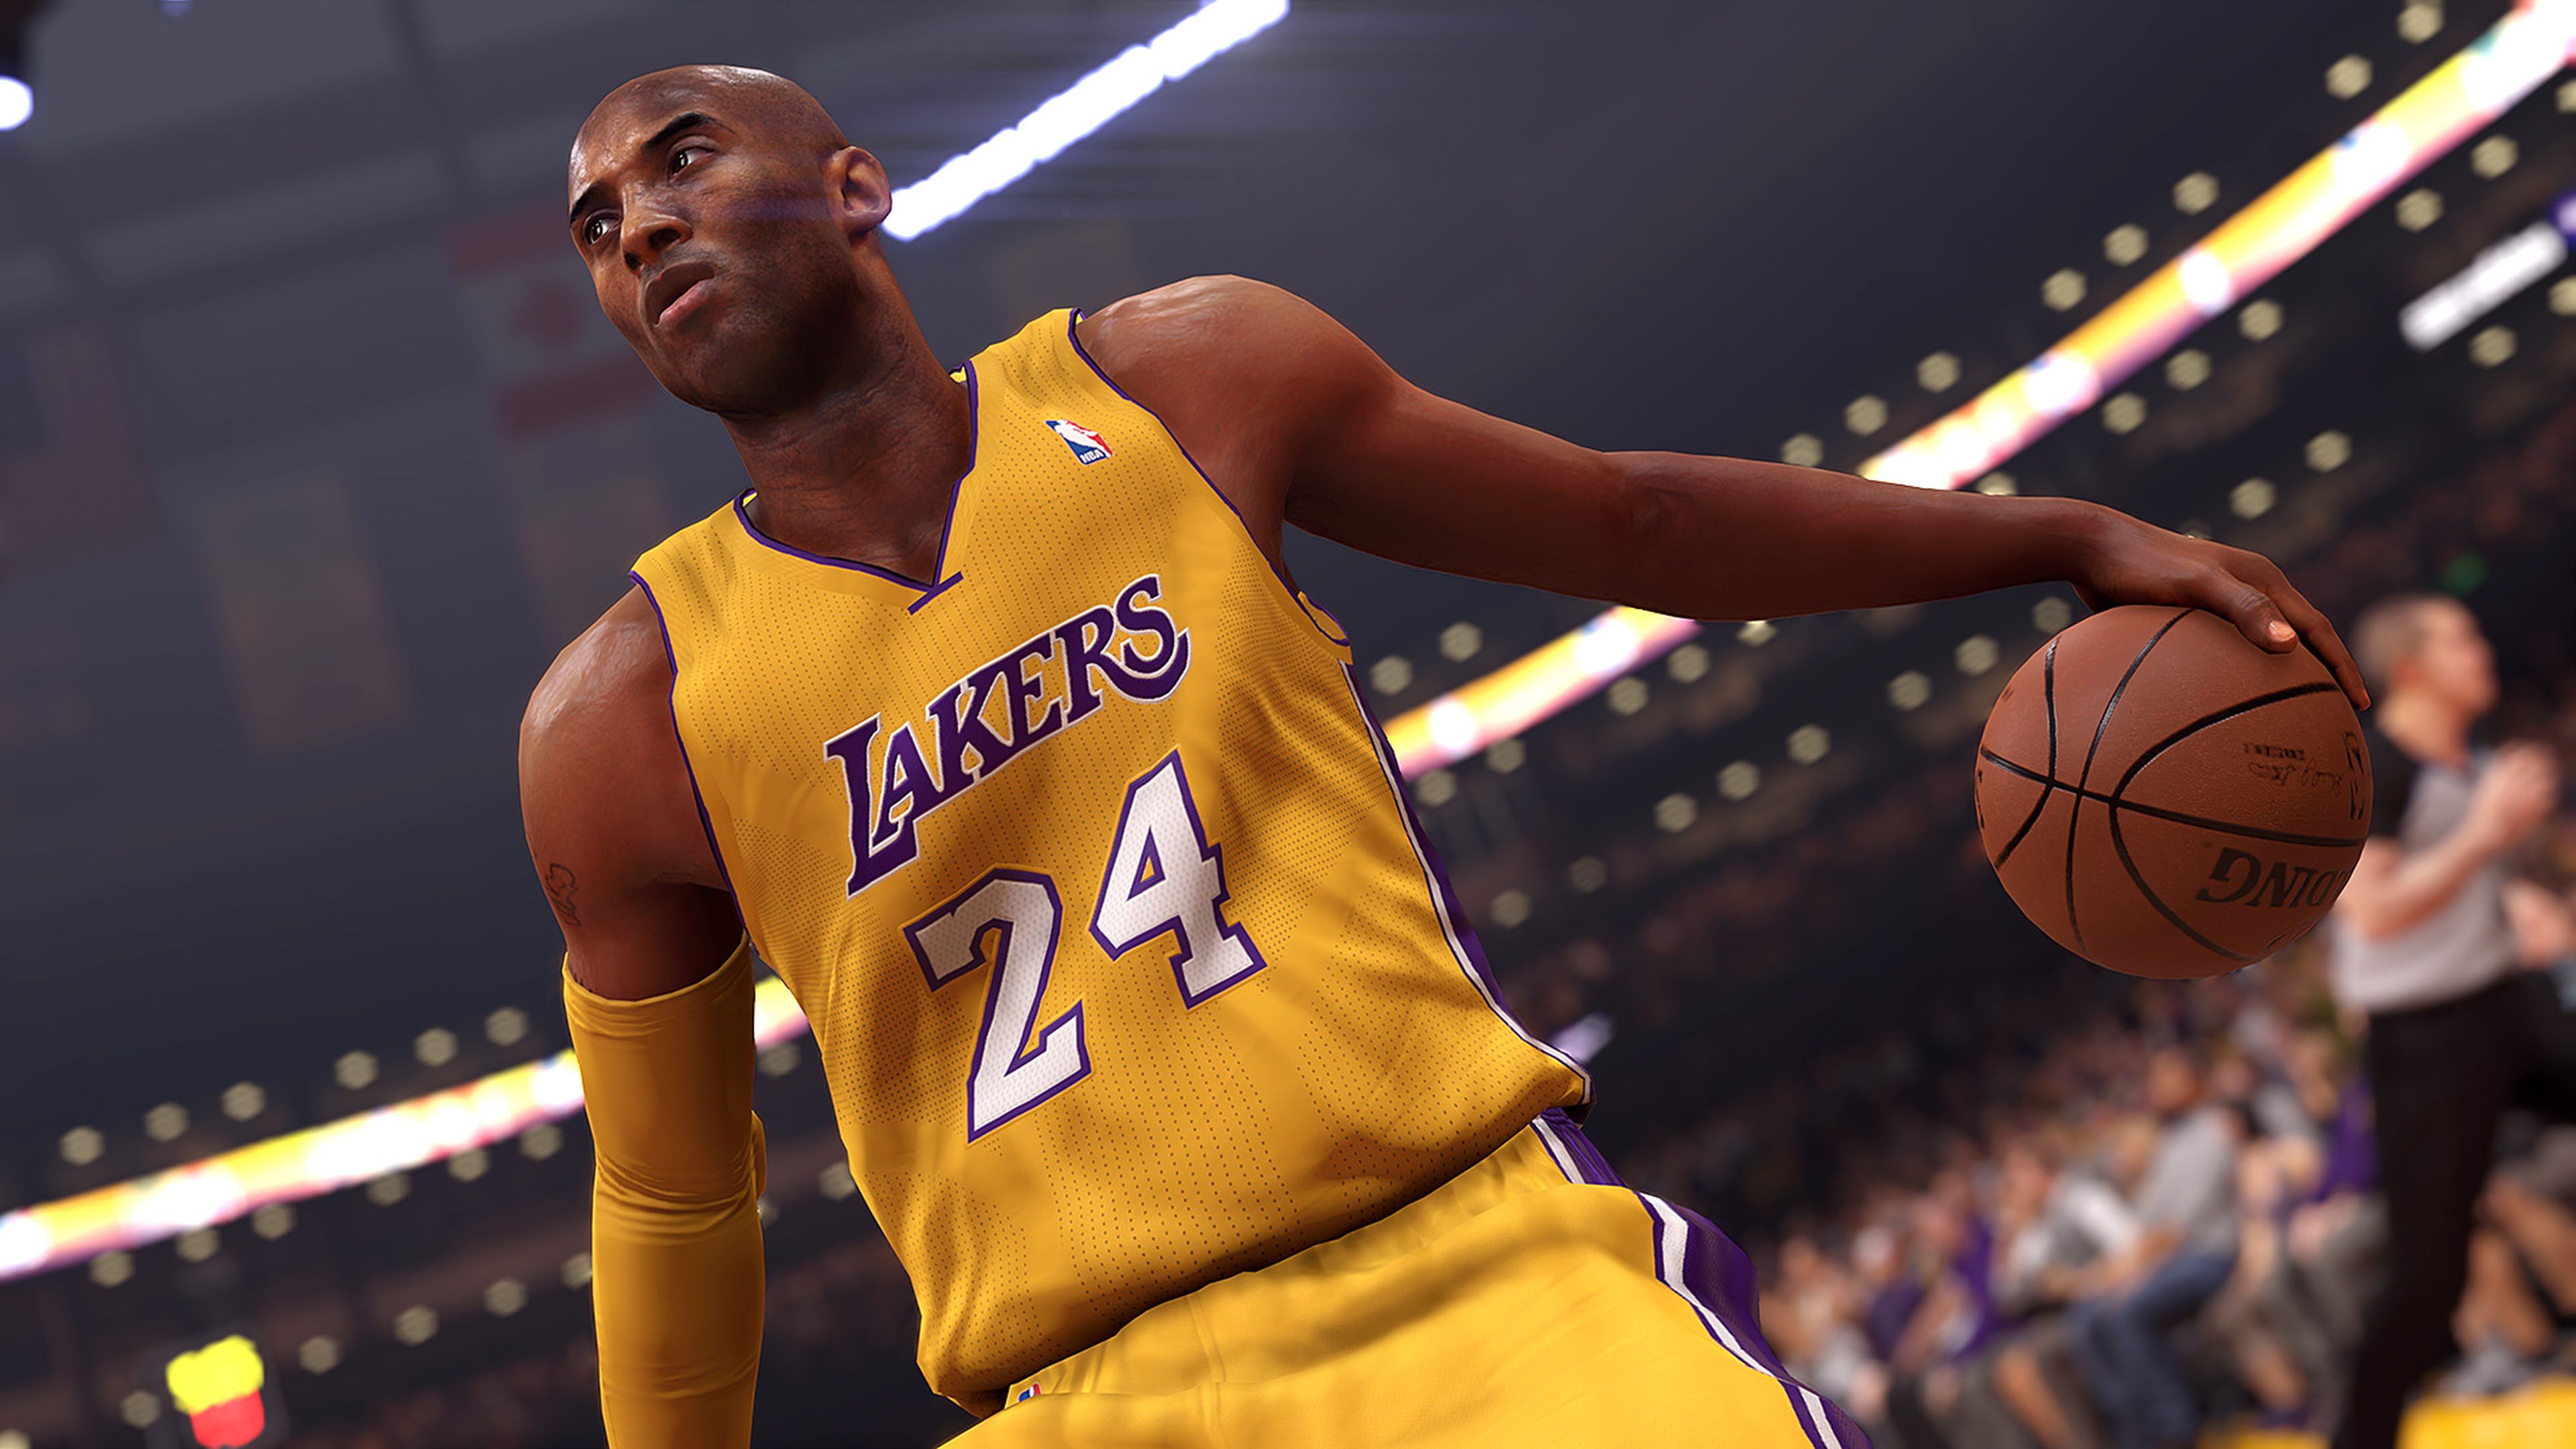 Avance de NBA 2K14 para PS4